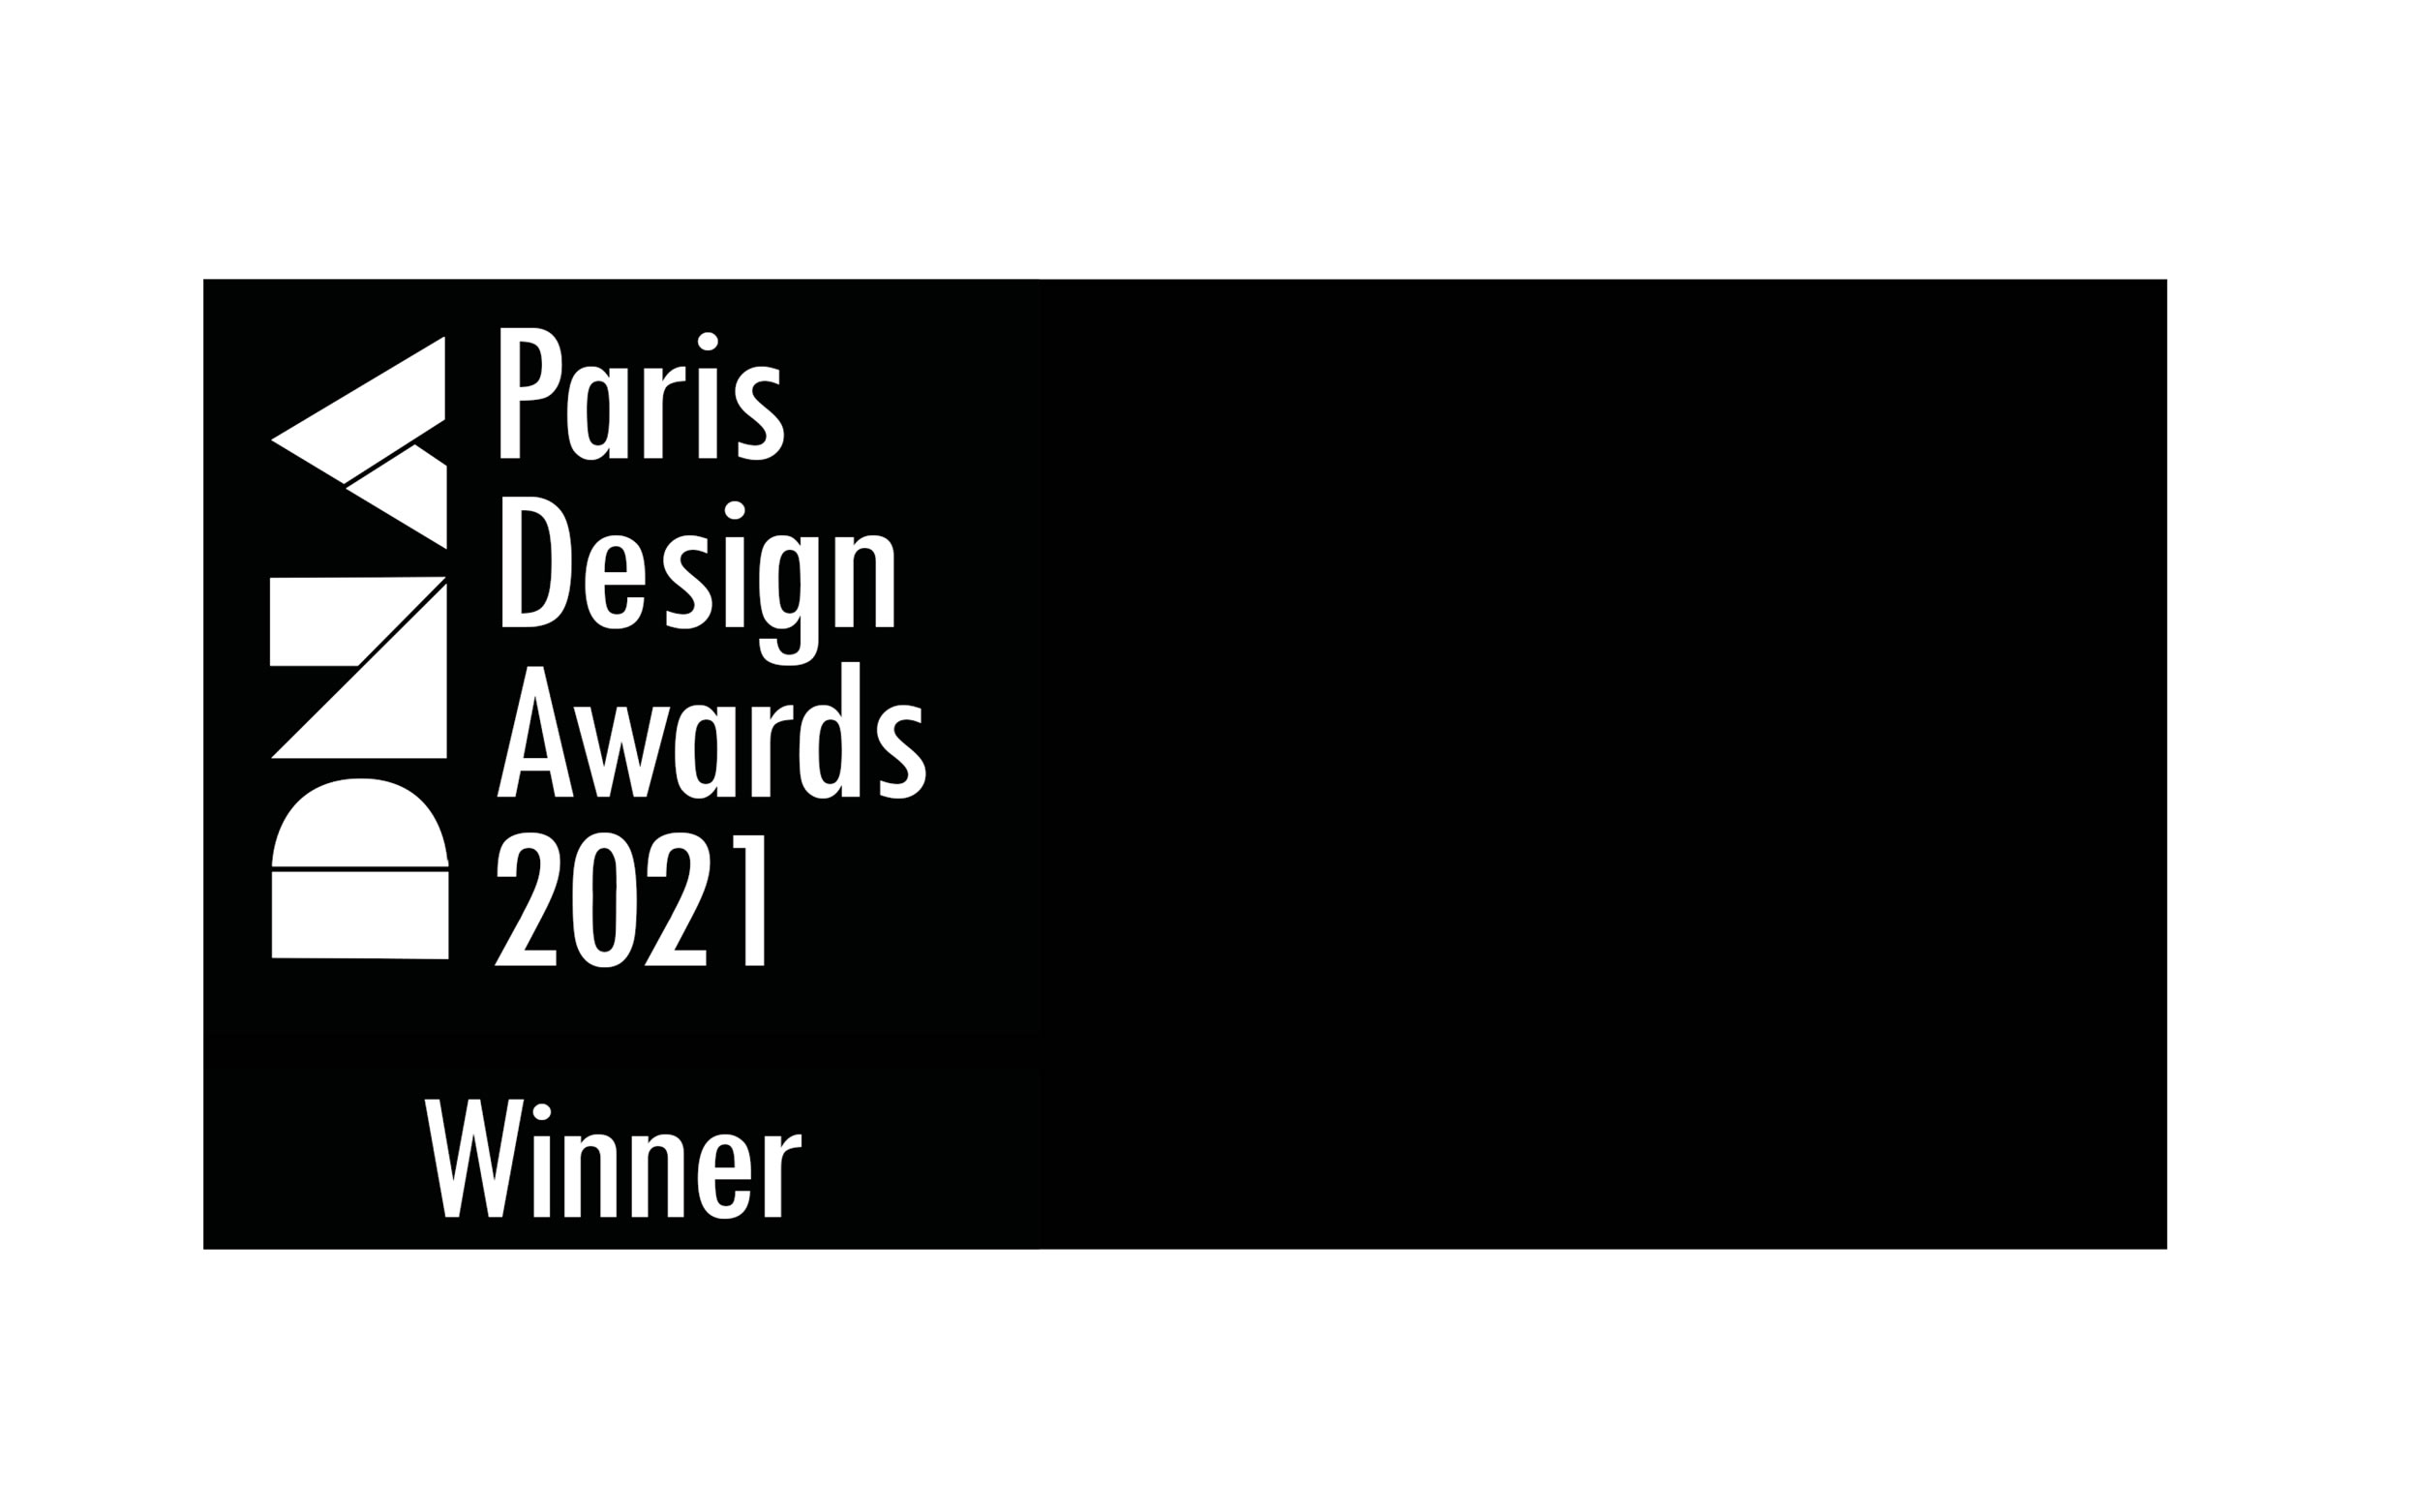 PARIS DESIGN AWARD WINNER 2021 FELIX SCHWAKE